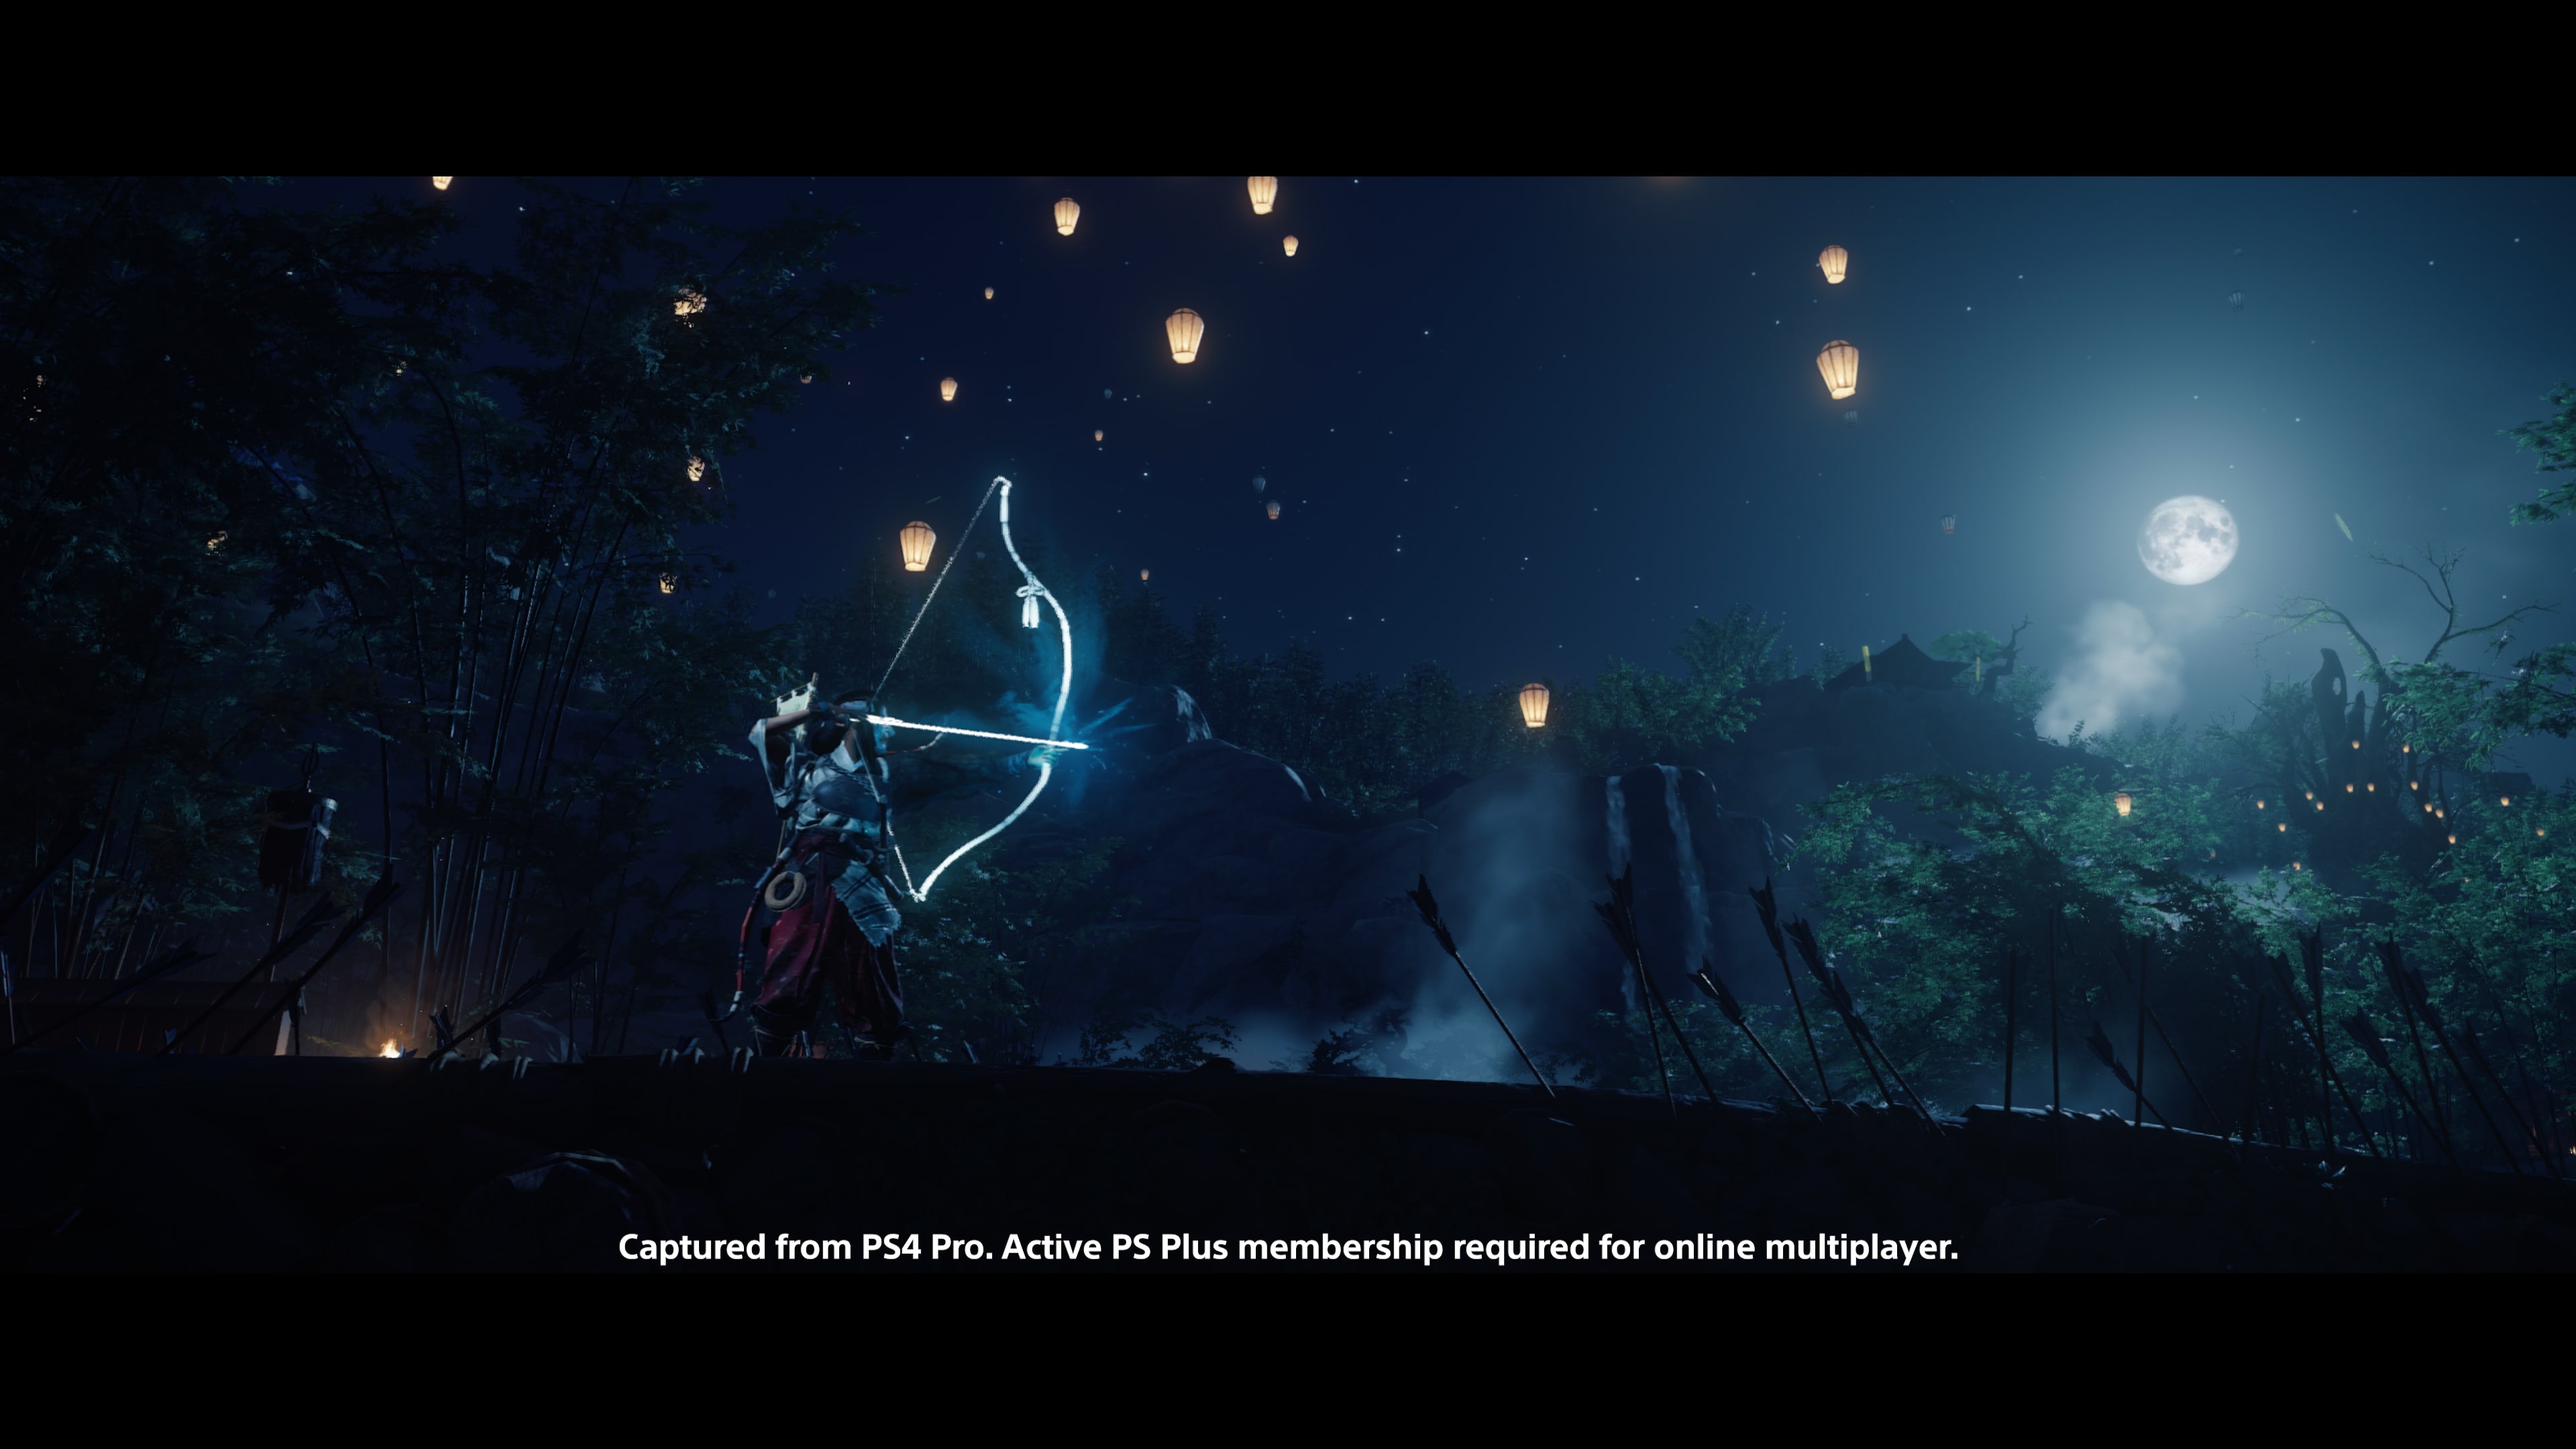 Jogo Ghost OF Tsushima Versão do Diretor PS5 Mídia Física - Playstation -  Case Plus